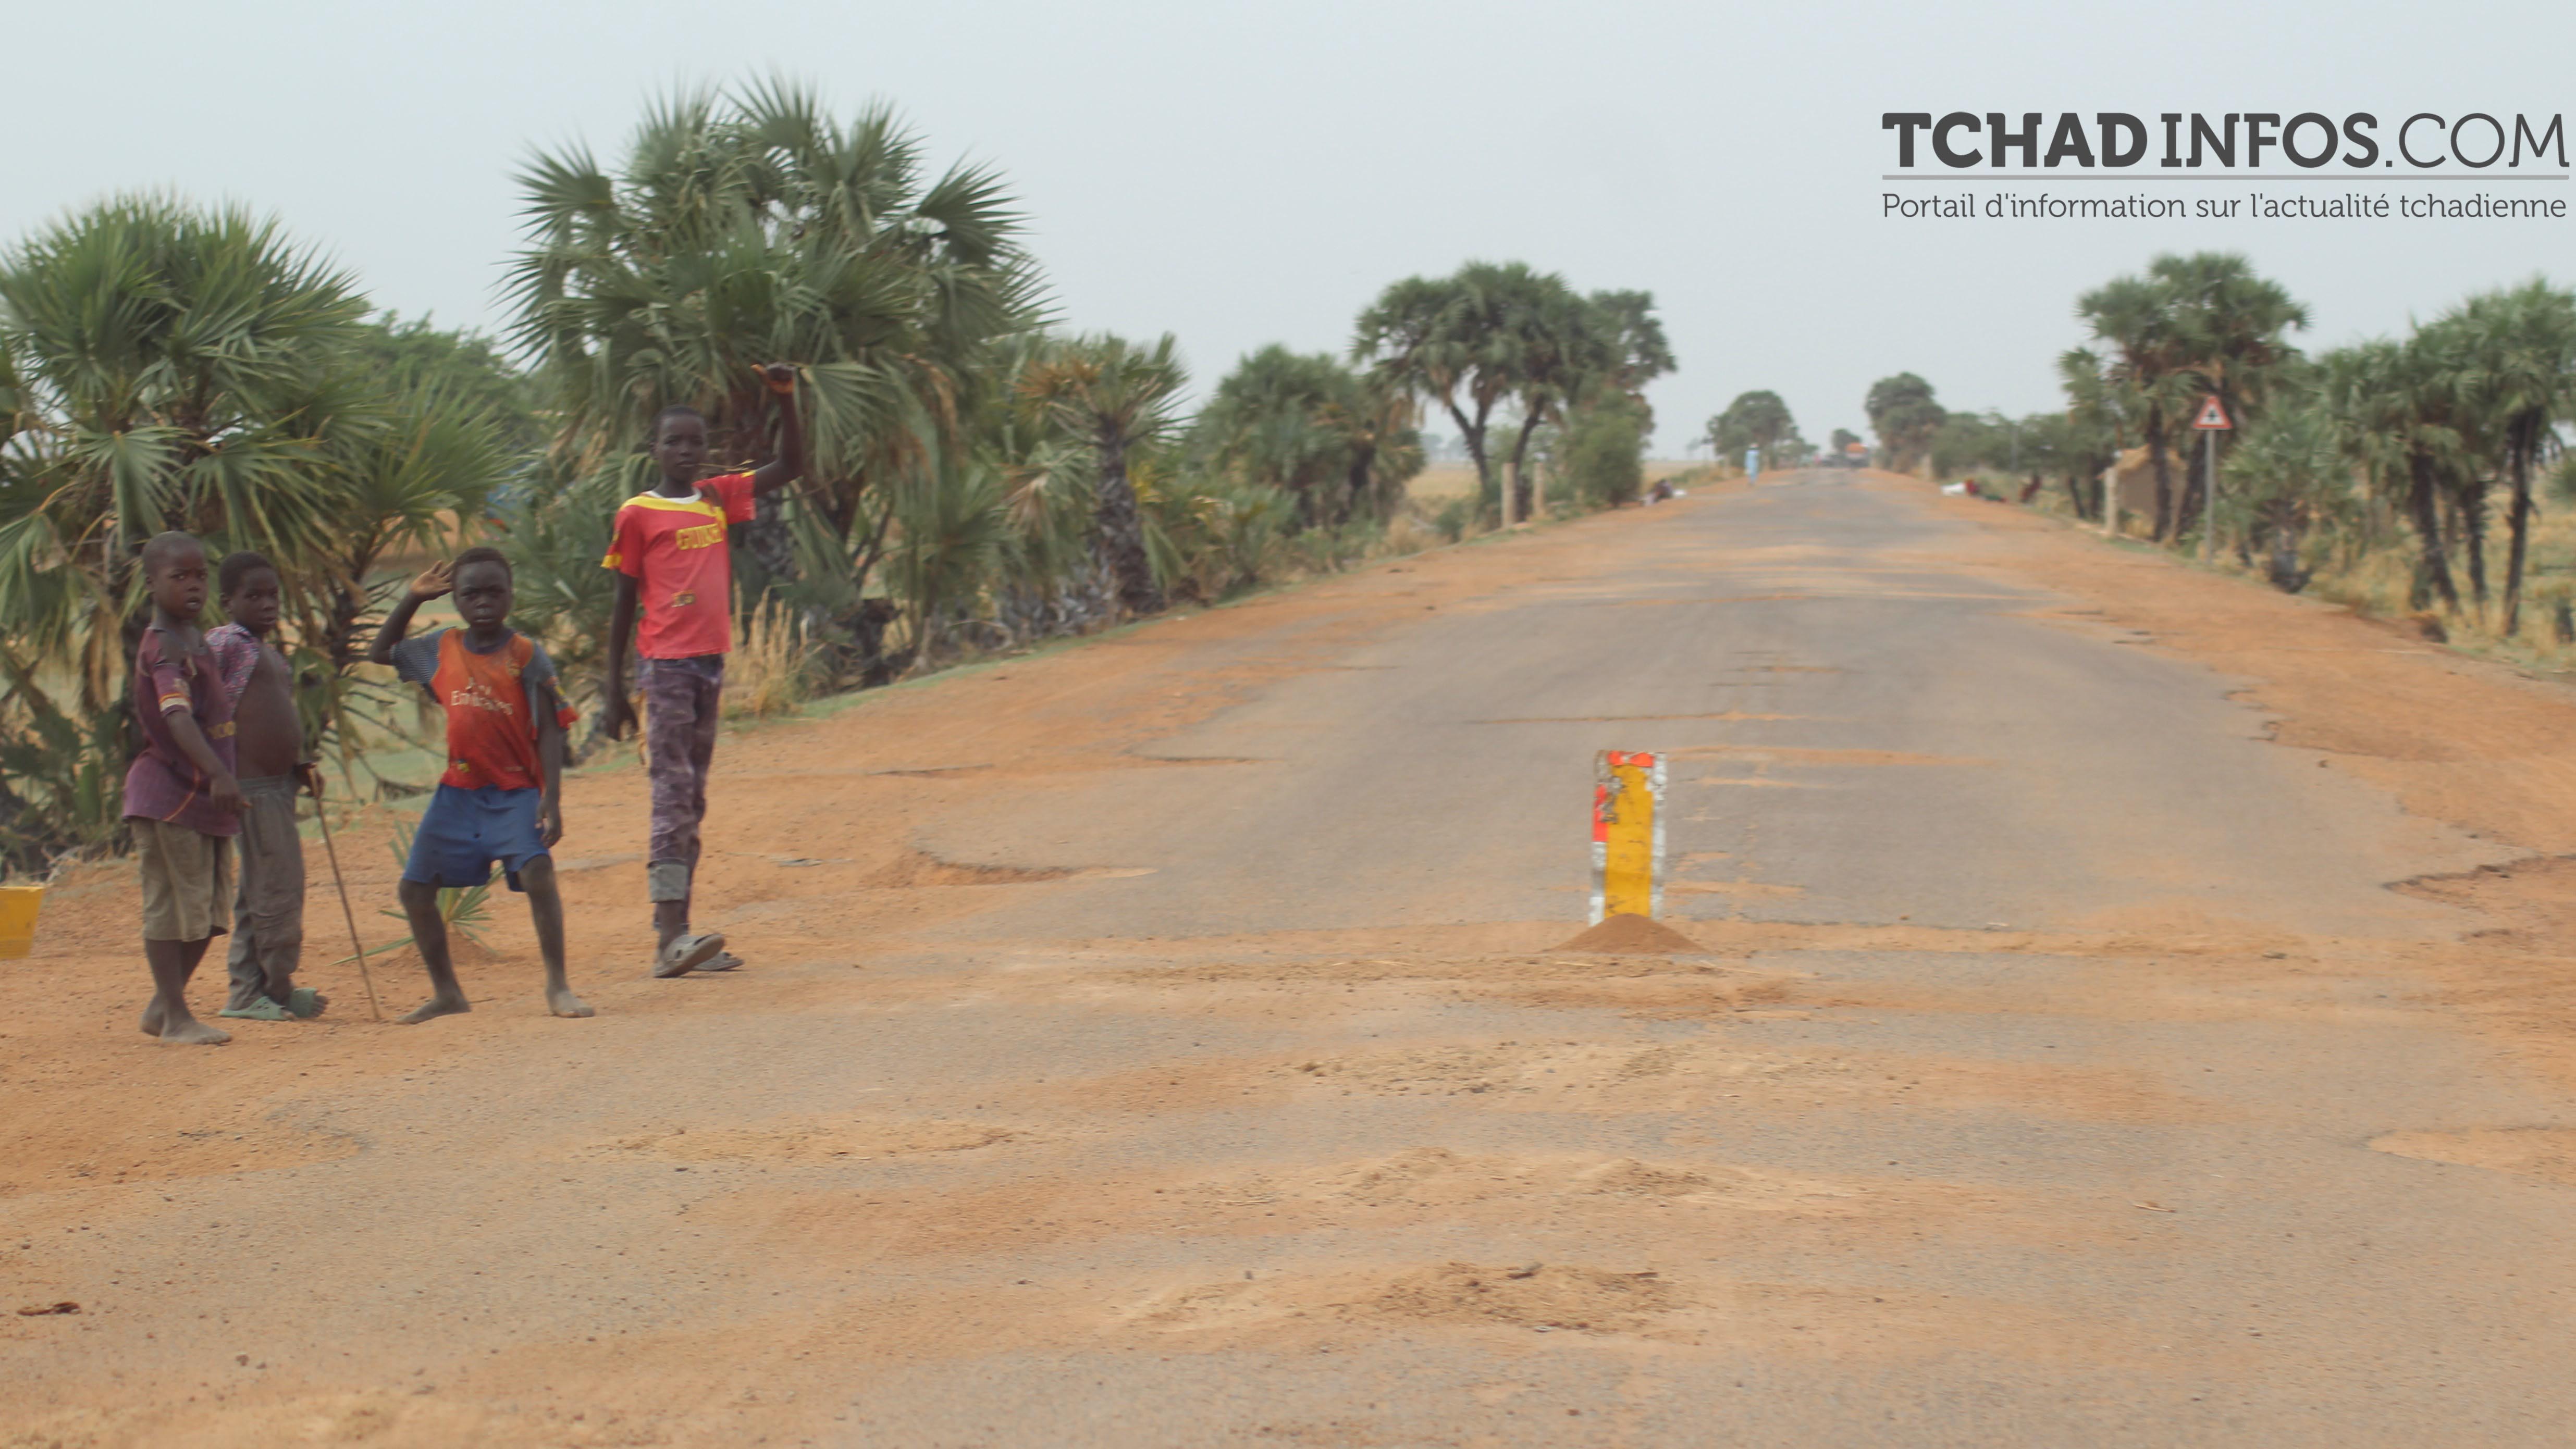 CEEAC : les choses se précisent pour le « corridor treize » reliant Ouesso à N’Djaména en passant par Bangui